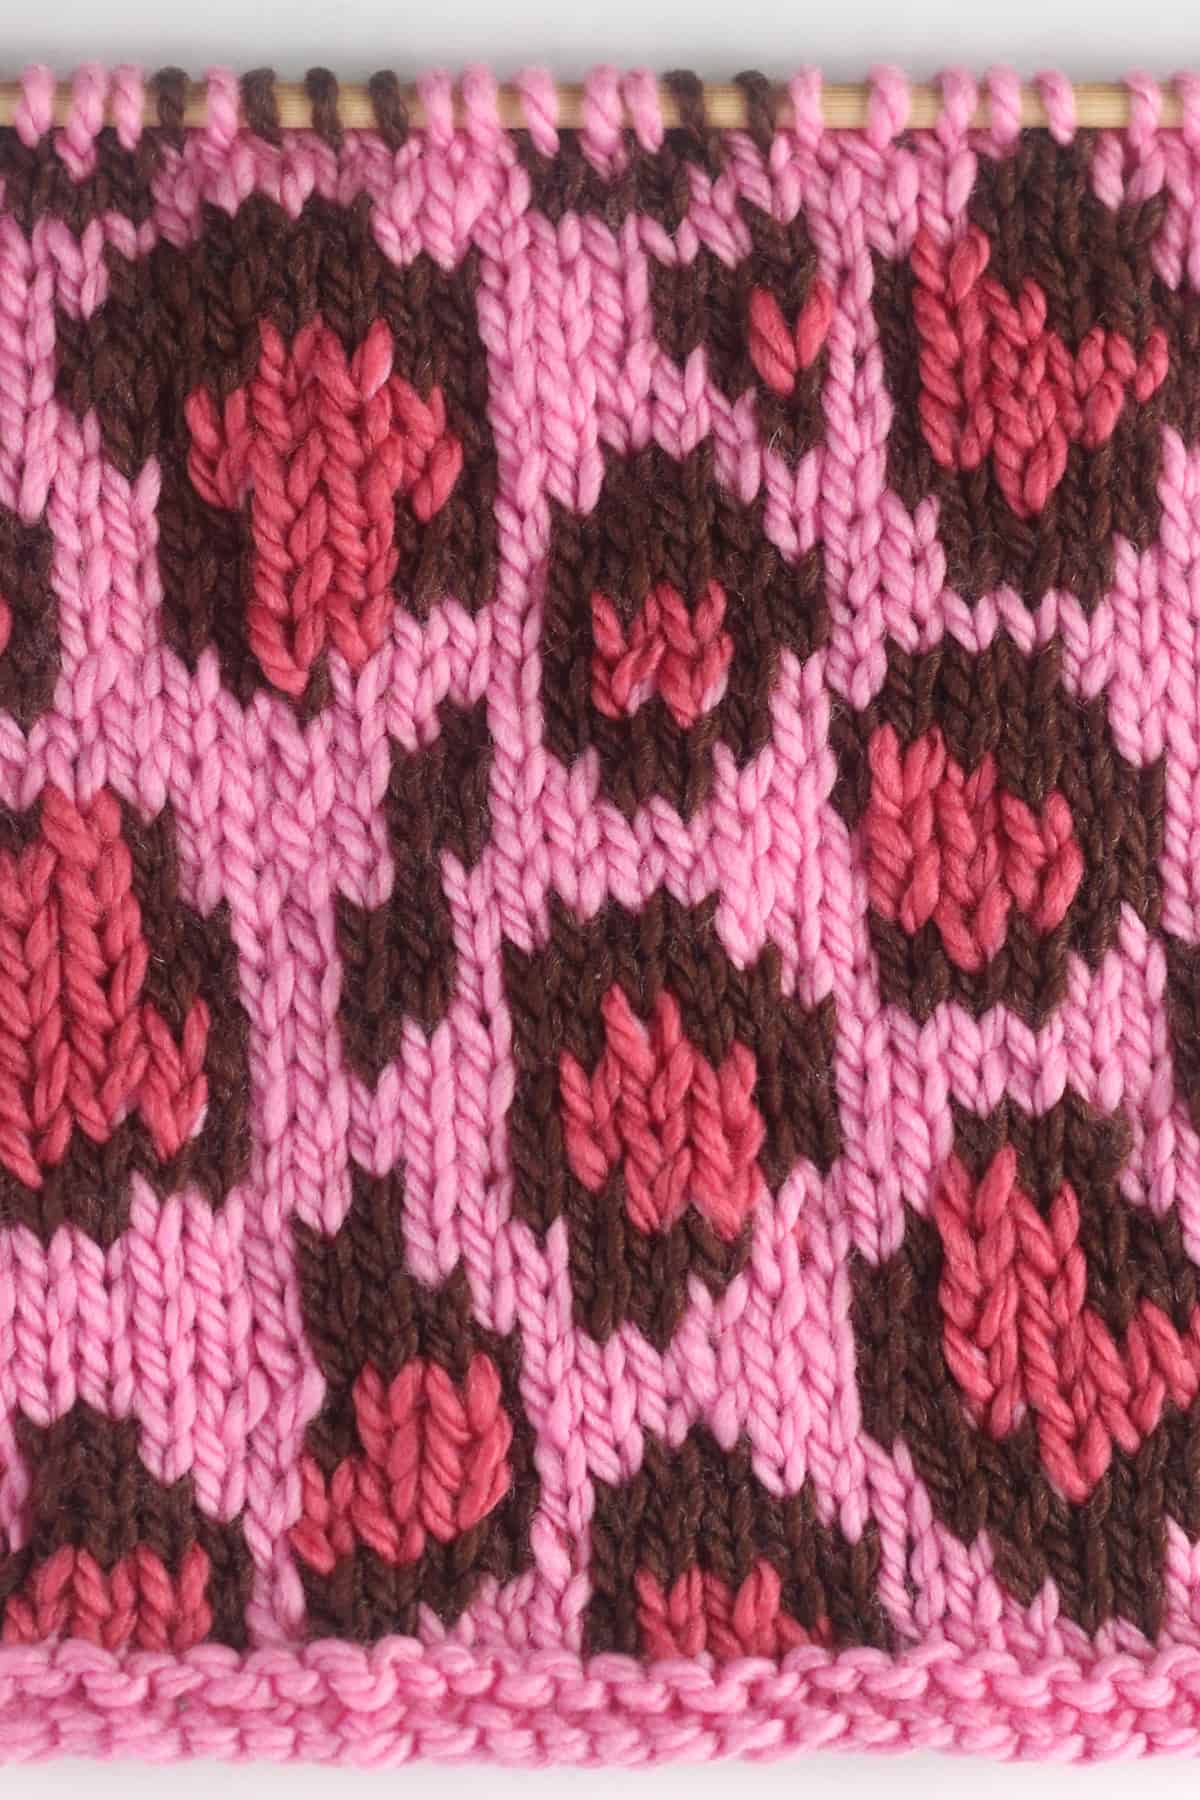 Leopard Print Knit Stitch Pattern - Studio Knit